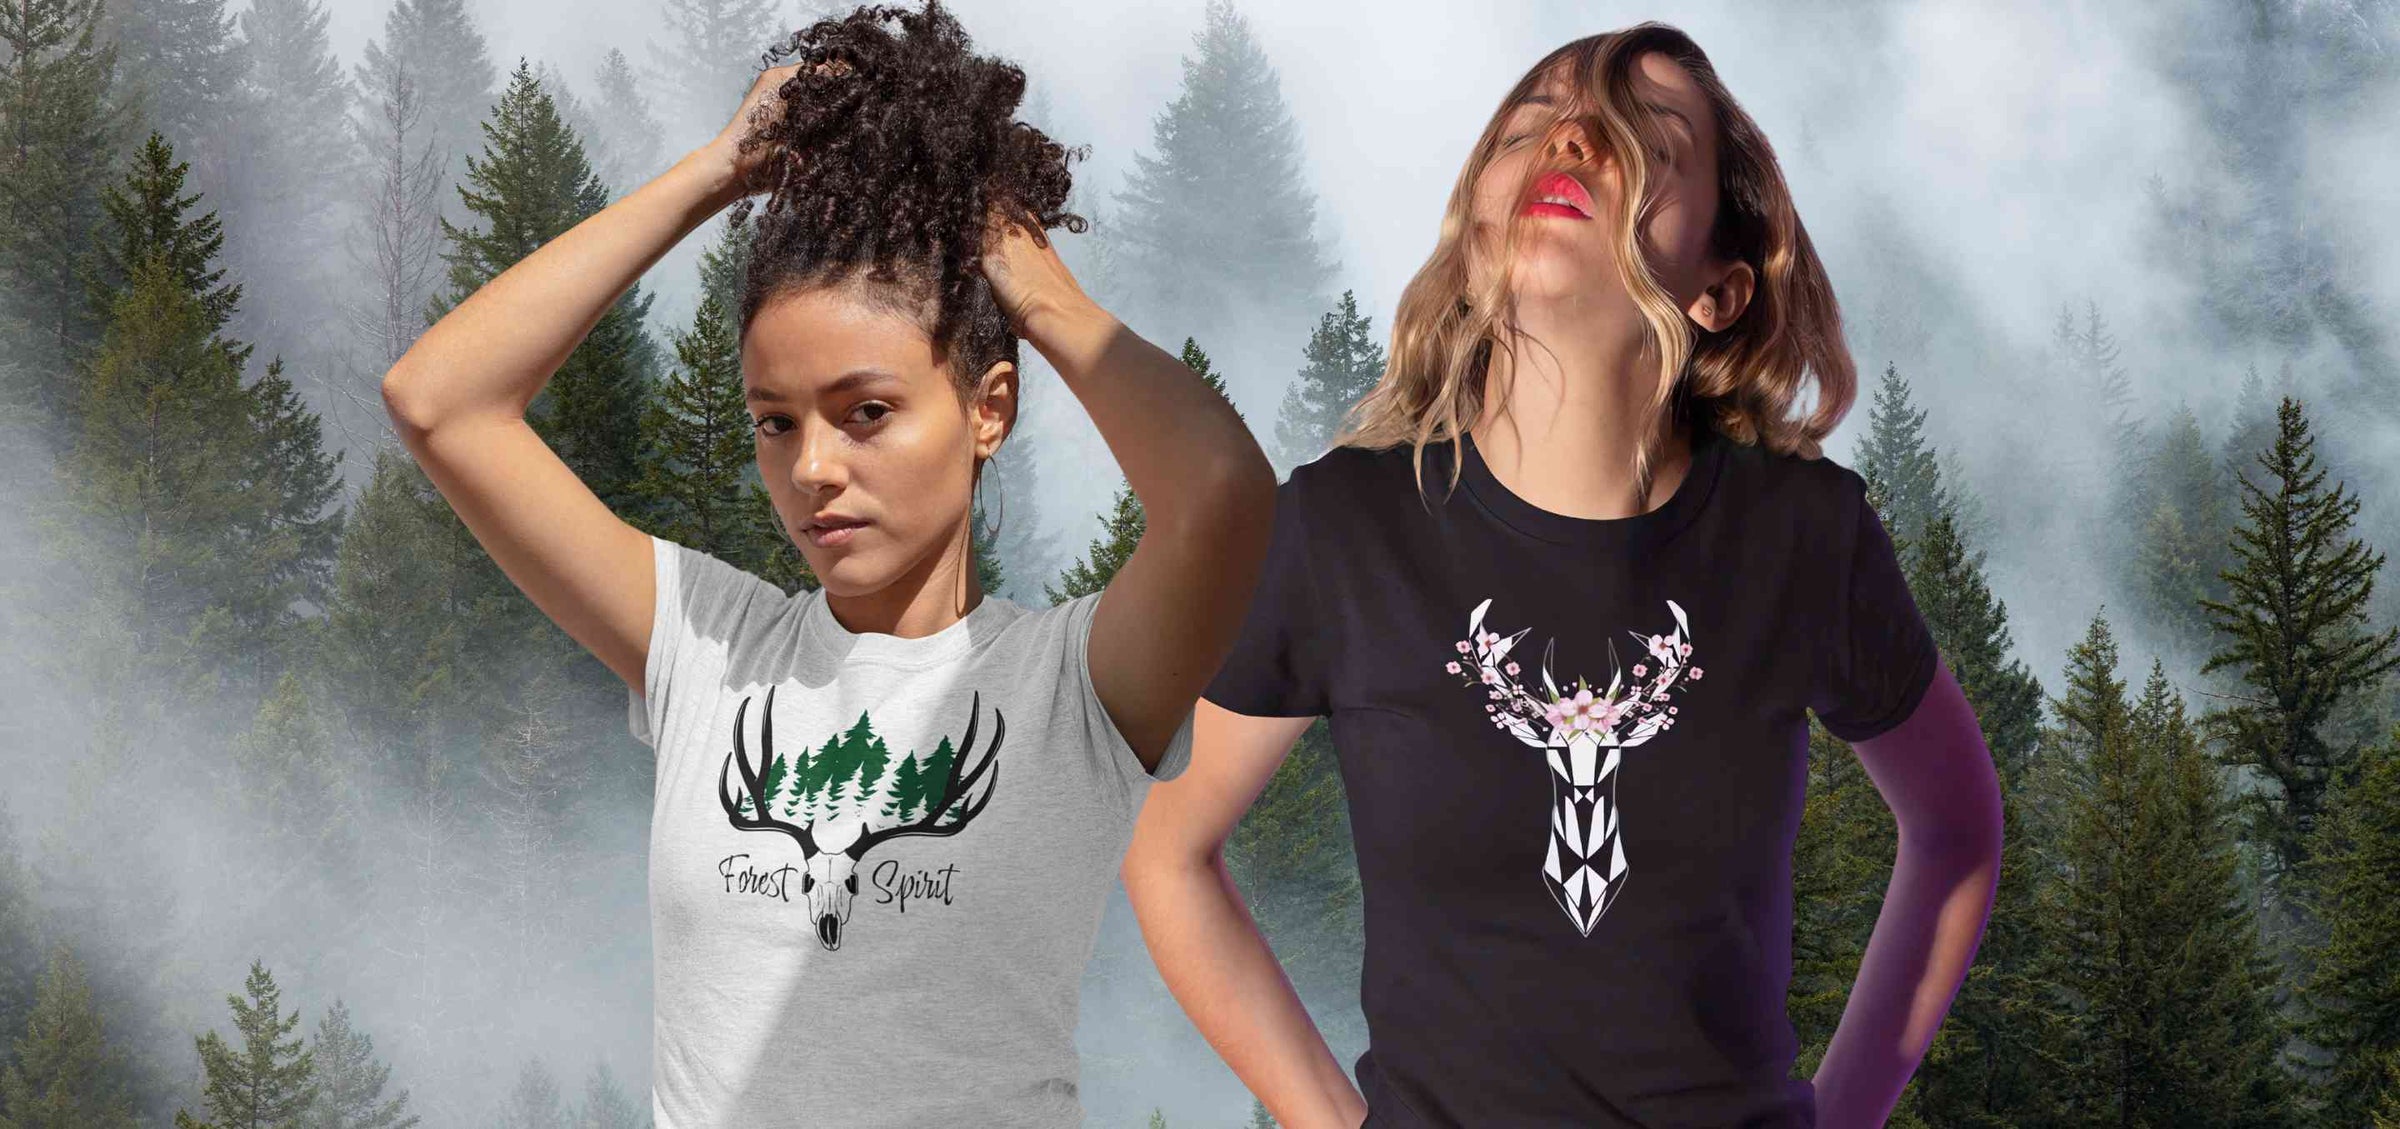 Auswahl von Damen Shirts aus der Runental Kollektion, mit Designs inspiriert von Mythologie und Fantasy.